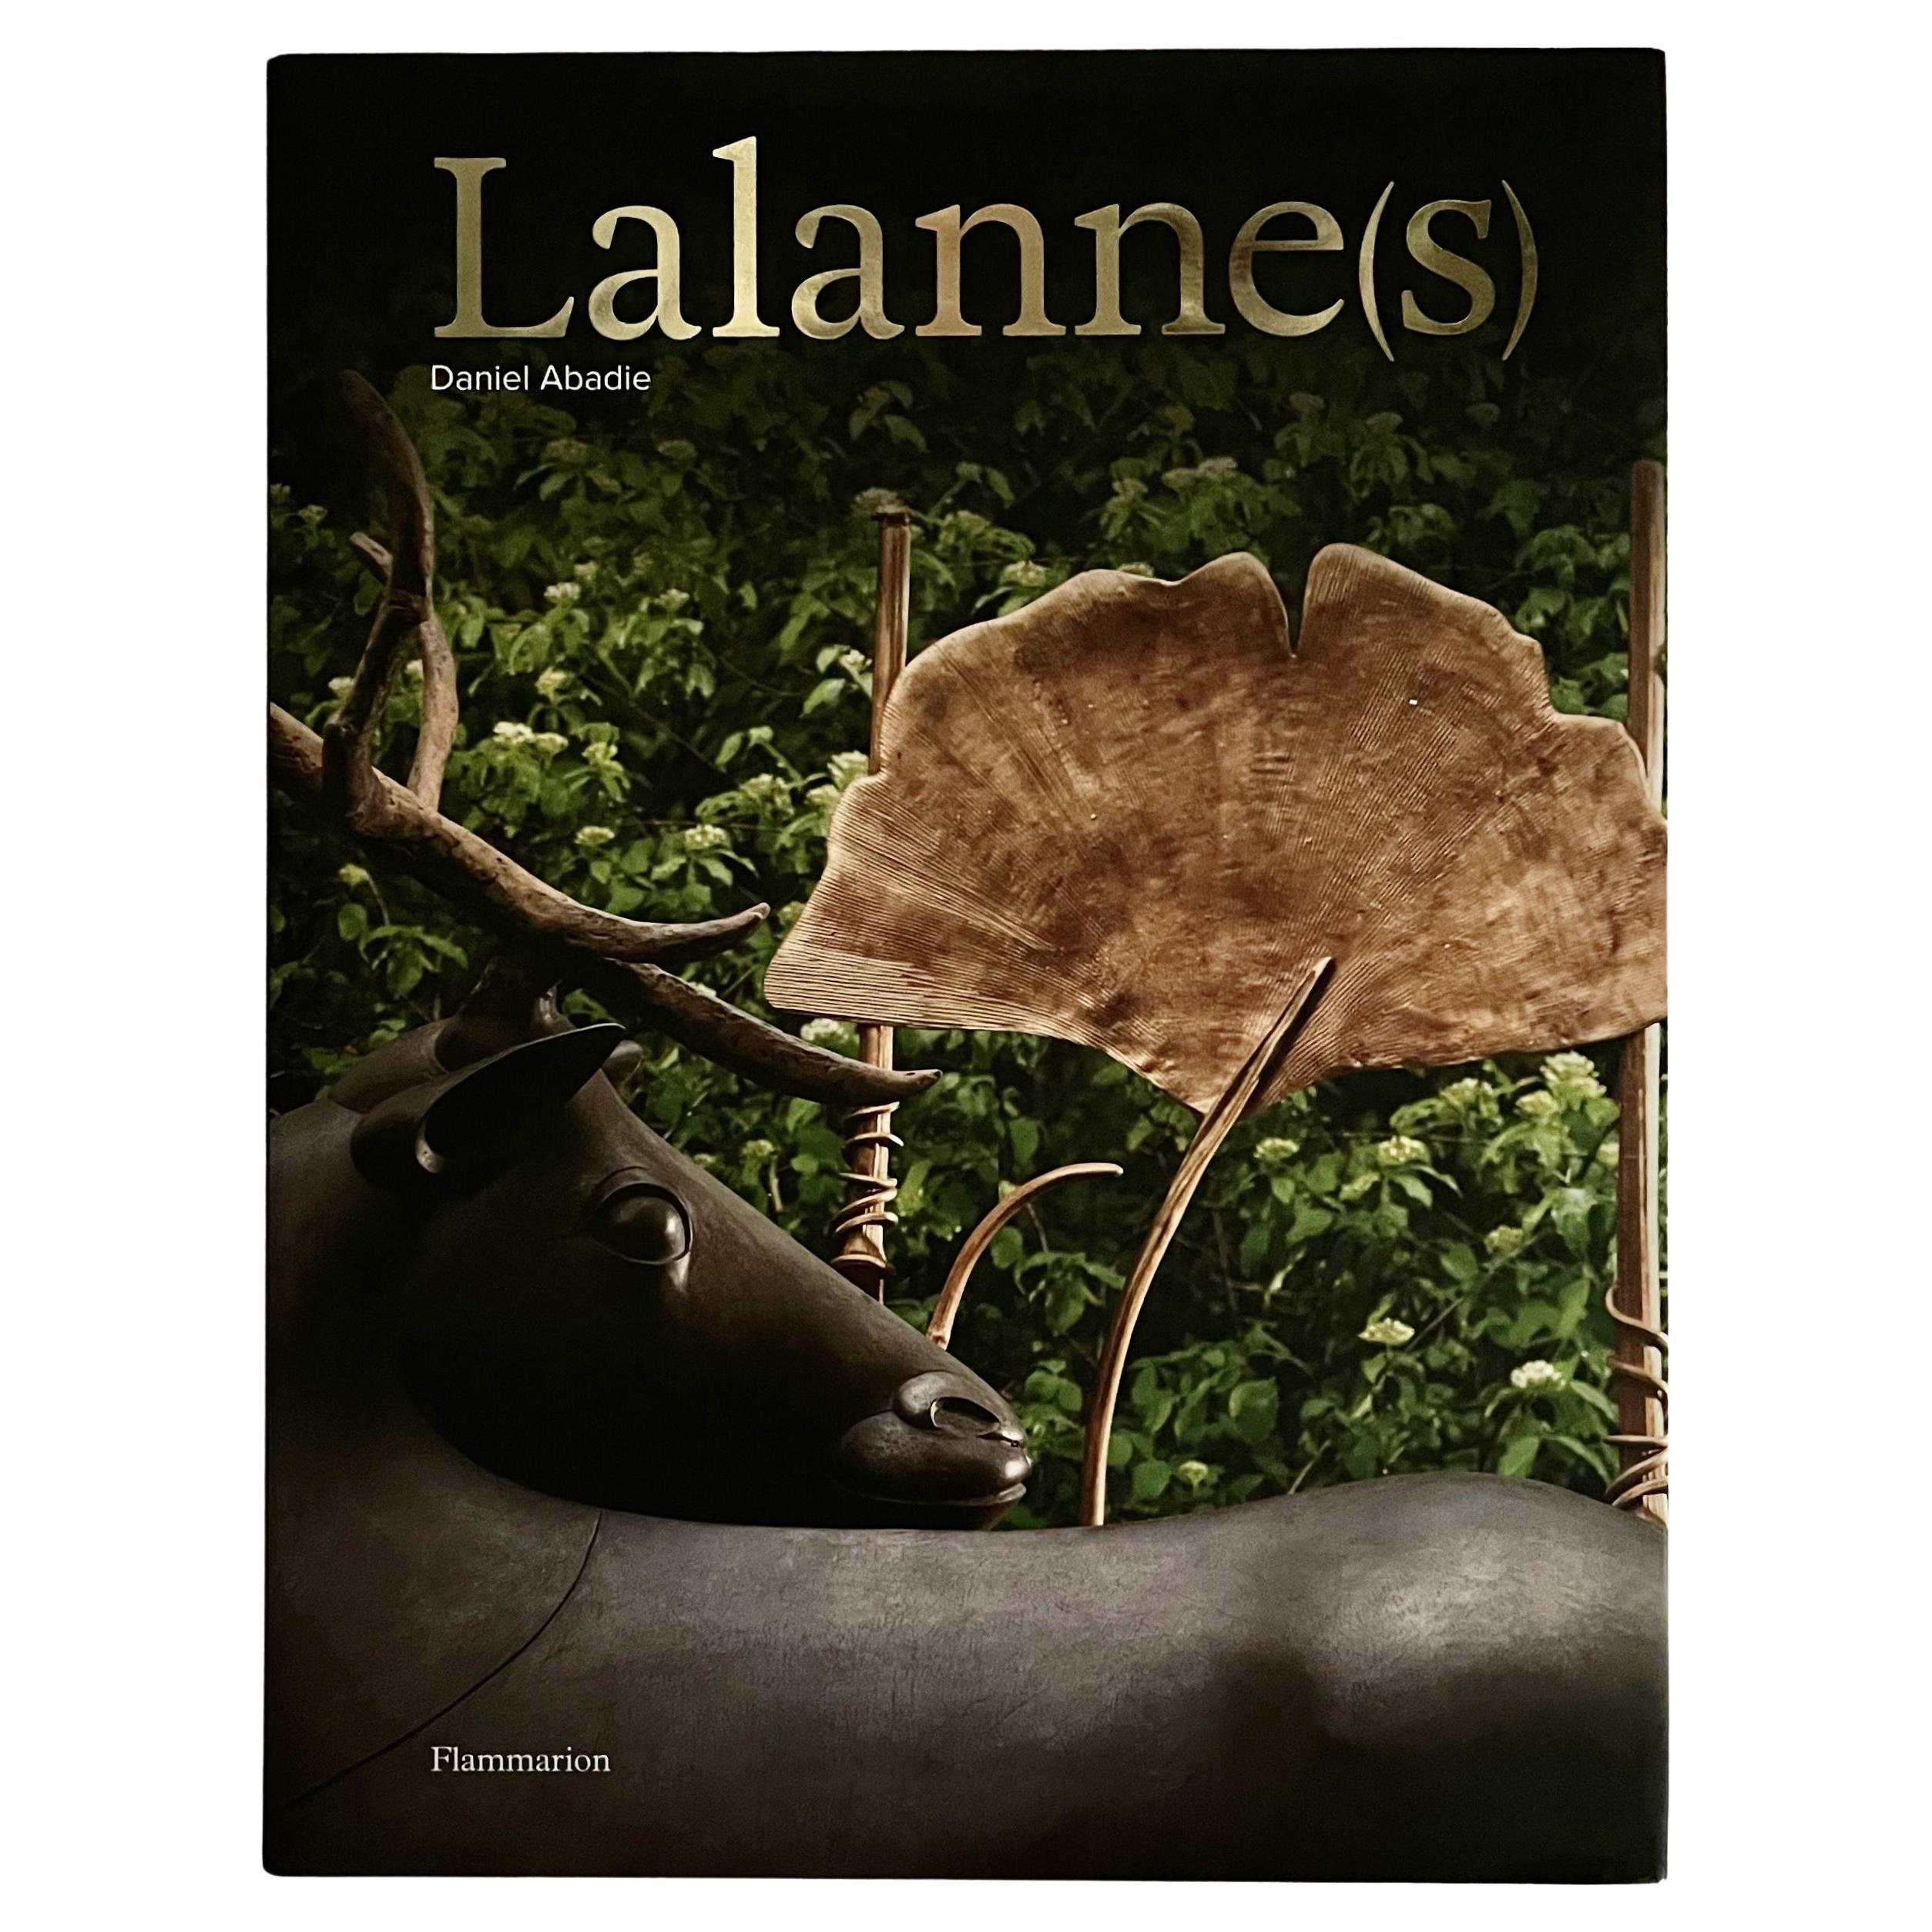 Lalanne(s) - Daniel Abadie - 1st Edition, Flammarion, Paris, 2008